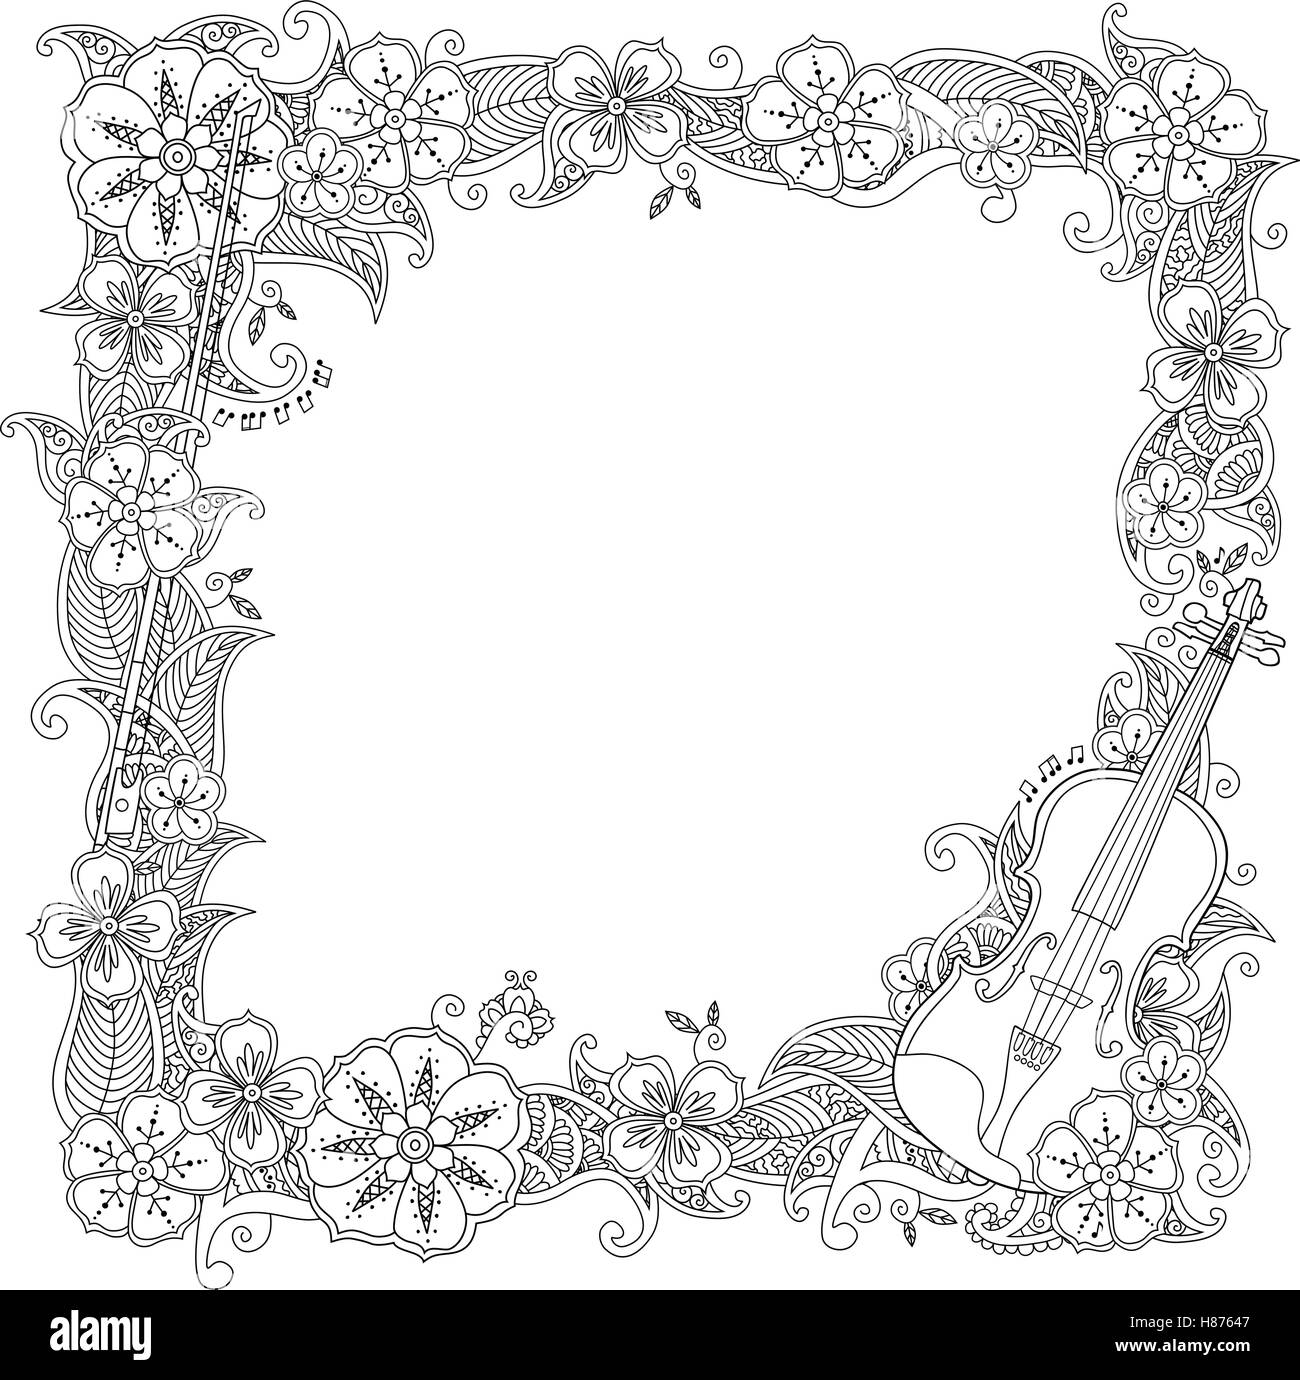 Coloriage - frontière, cadre carré avec violon isolé sur fond blanc Image  Vectorielle Stock - Alamy